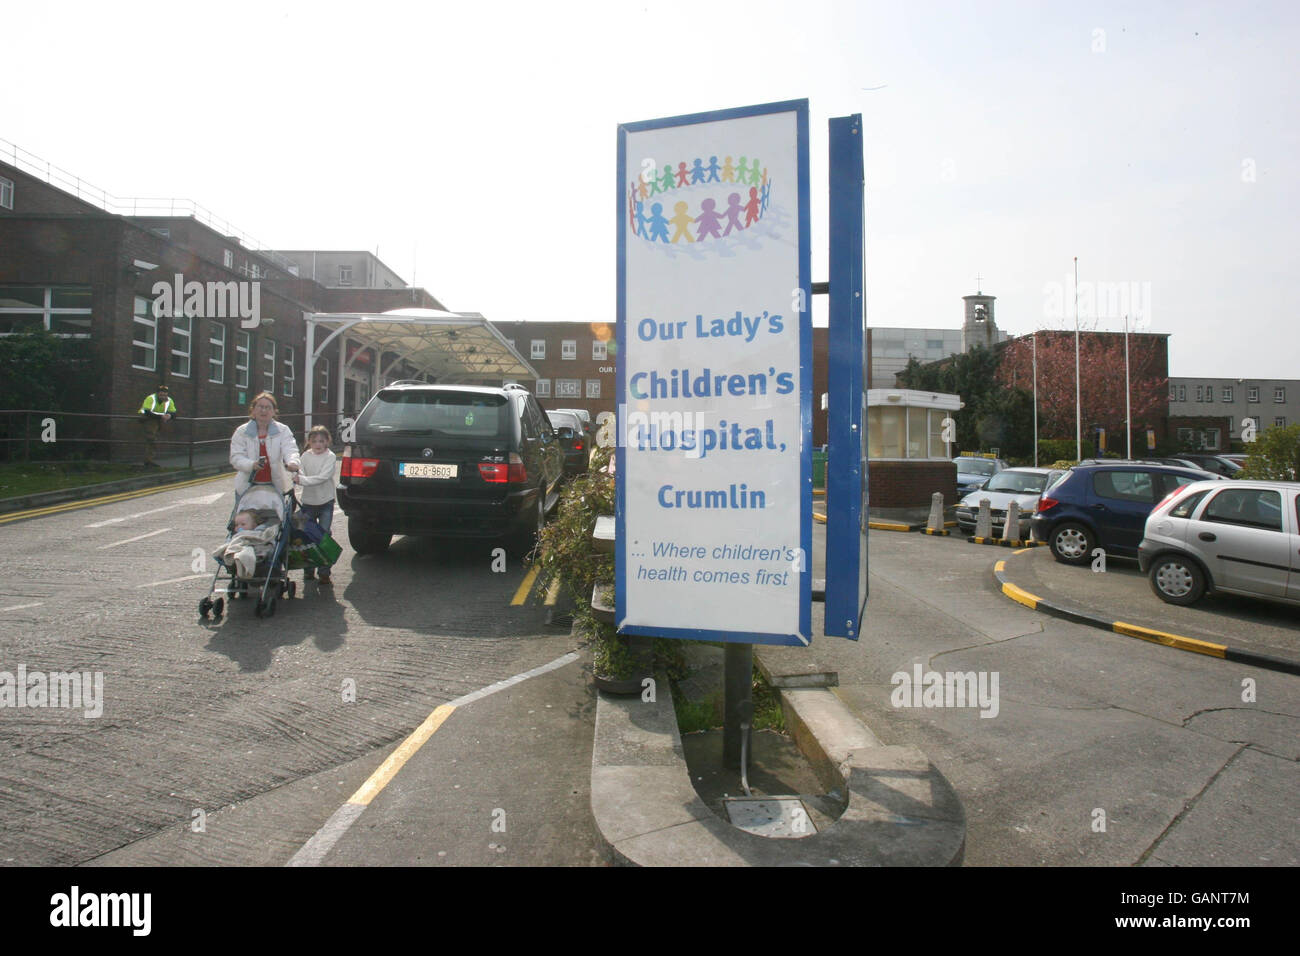 Hôpital pour enfants Our Lady à Crumlin, Dublin. Le plus grand hôpital pour enfants d'Irlande a admis avoir enlevé le mauvais rein d'un enfant pendant la chirurgie. Banque D'Images